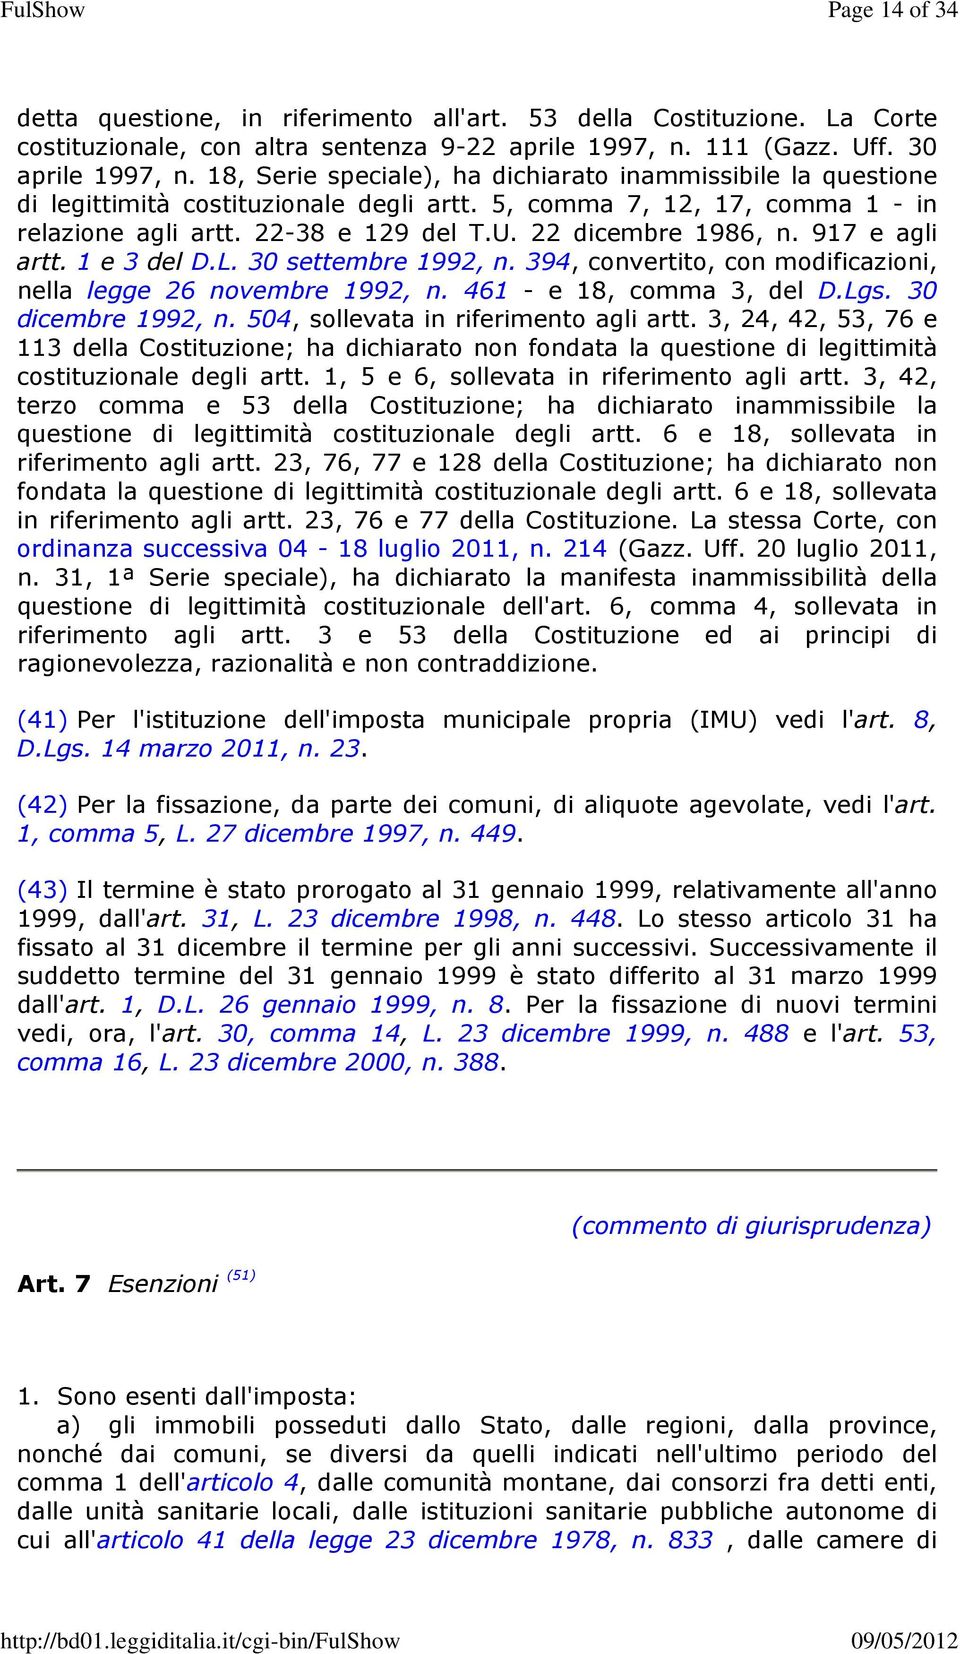 917 e agli artt. 1 e 3 del D.L. 30 settembre 1992, n. 394, convertito, con modificazioni, nella legge 26 novembre 1992, n. 461 - e 18, comma 3, del D.Lgs. 30 dicembre 1992, n.